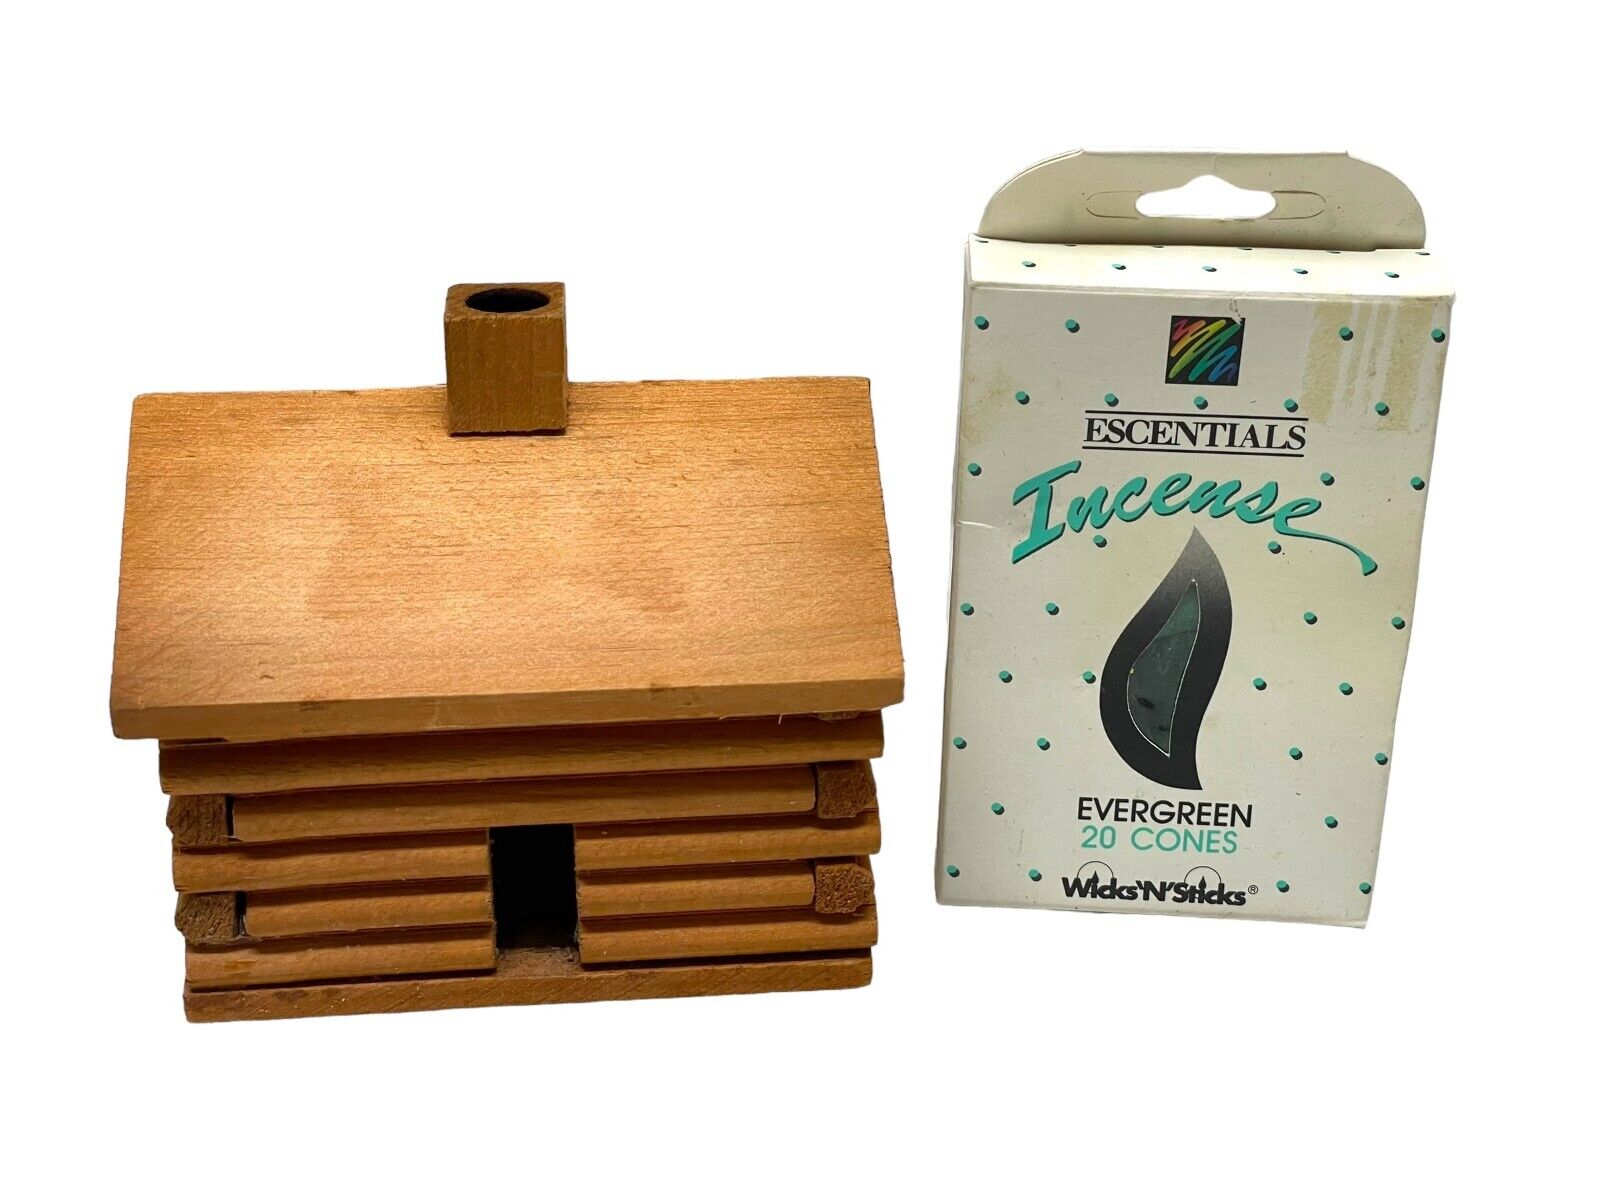 VTG Rustic Log Cabin Incense Burner Miniature Wooden House-WICKS n STICKS Cones